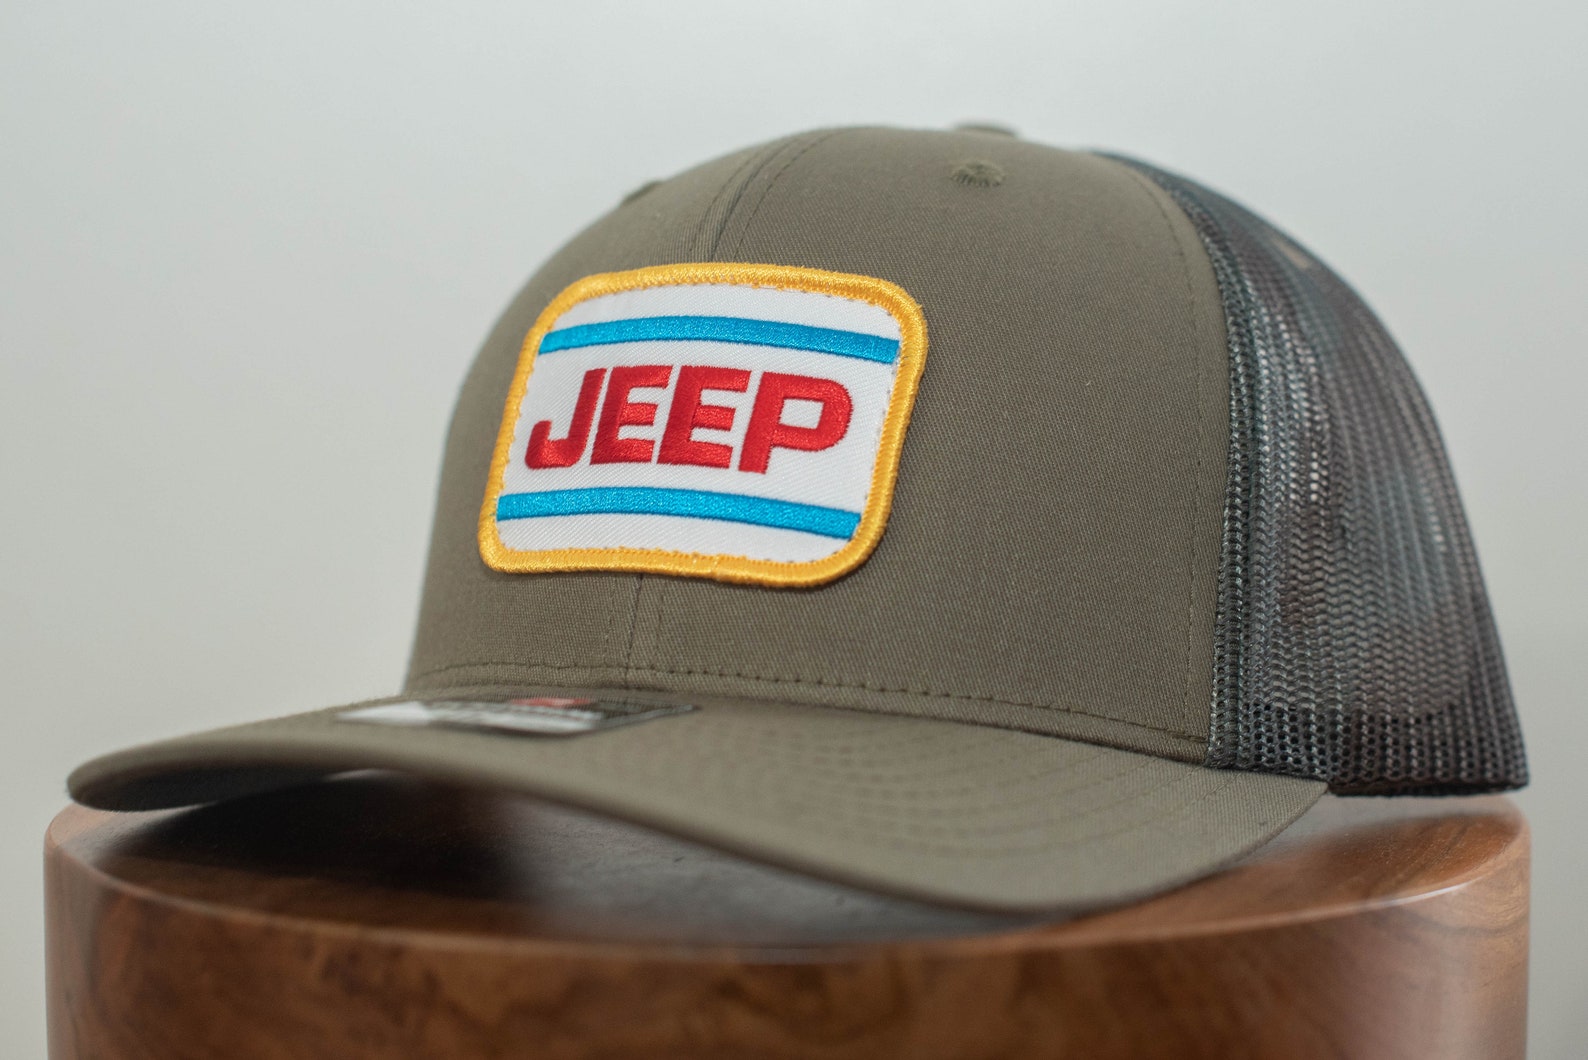 Jeep Patch Hat Vintage Patch Hat Richardson 112 Trucker Hat | Etsy